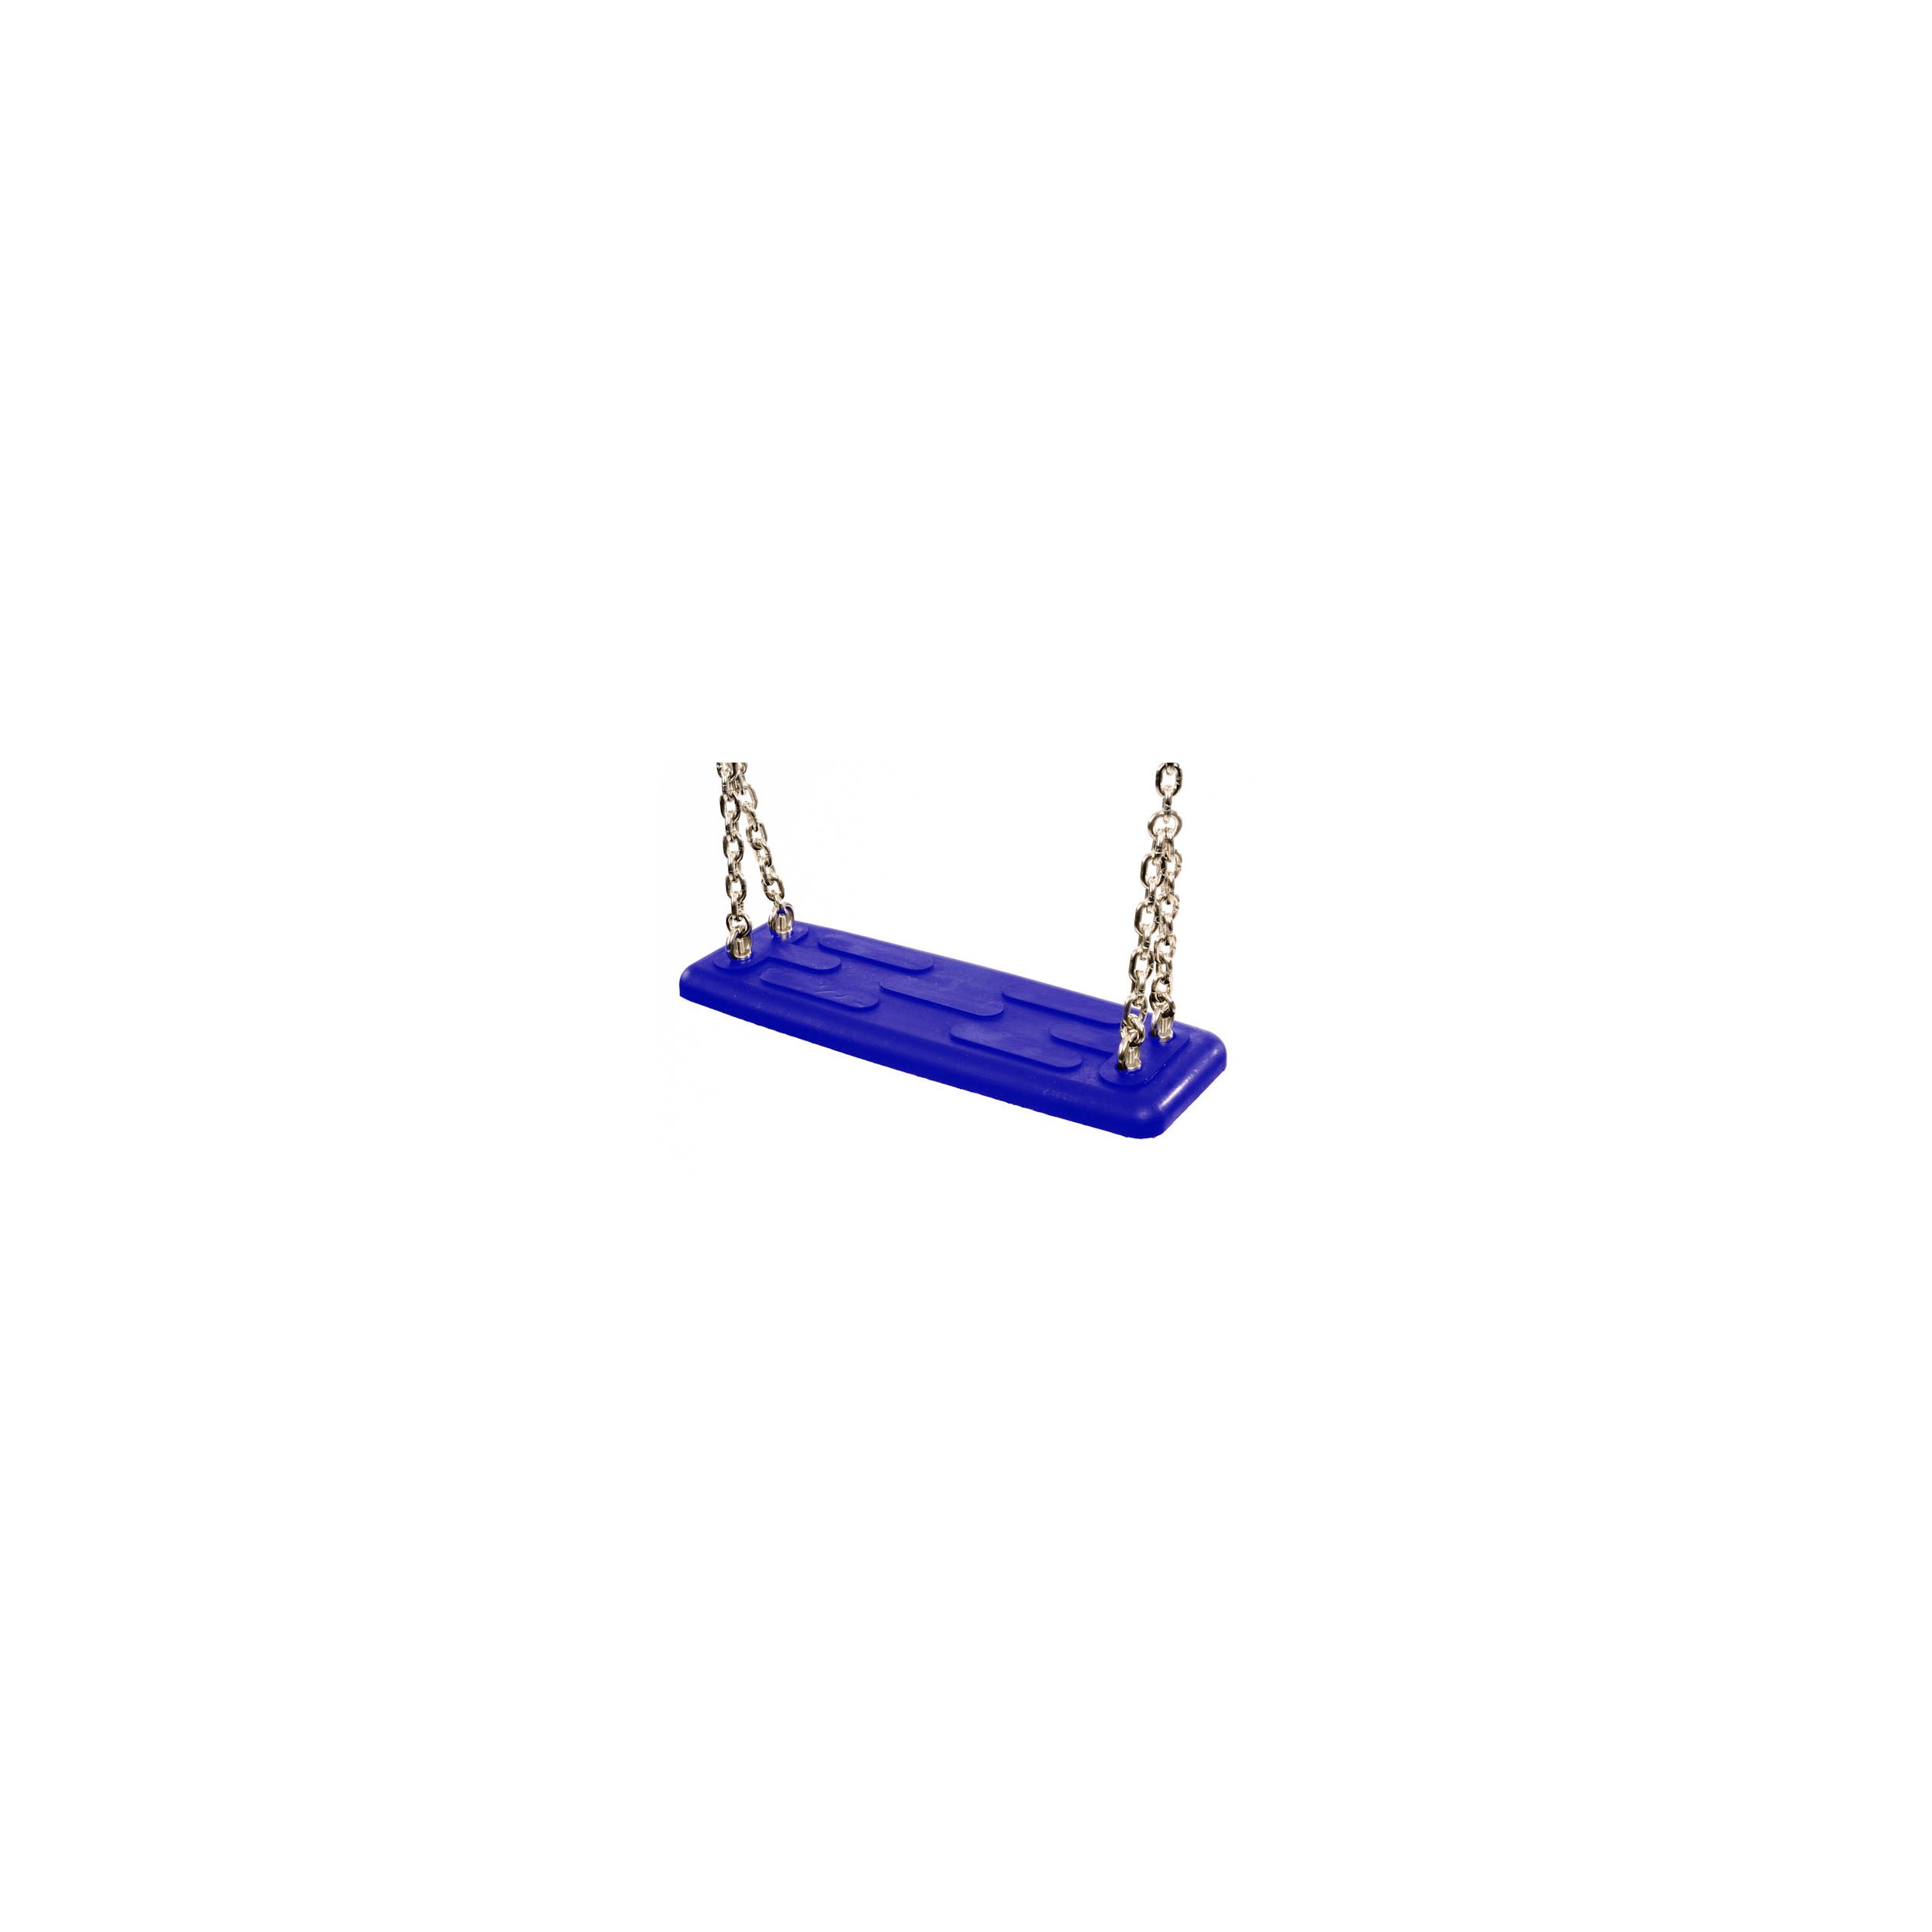 Siège de balançoire de sécurité type 2 bleu Acier inoxydable AISI 316 250 cm